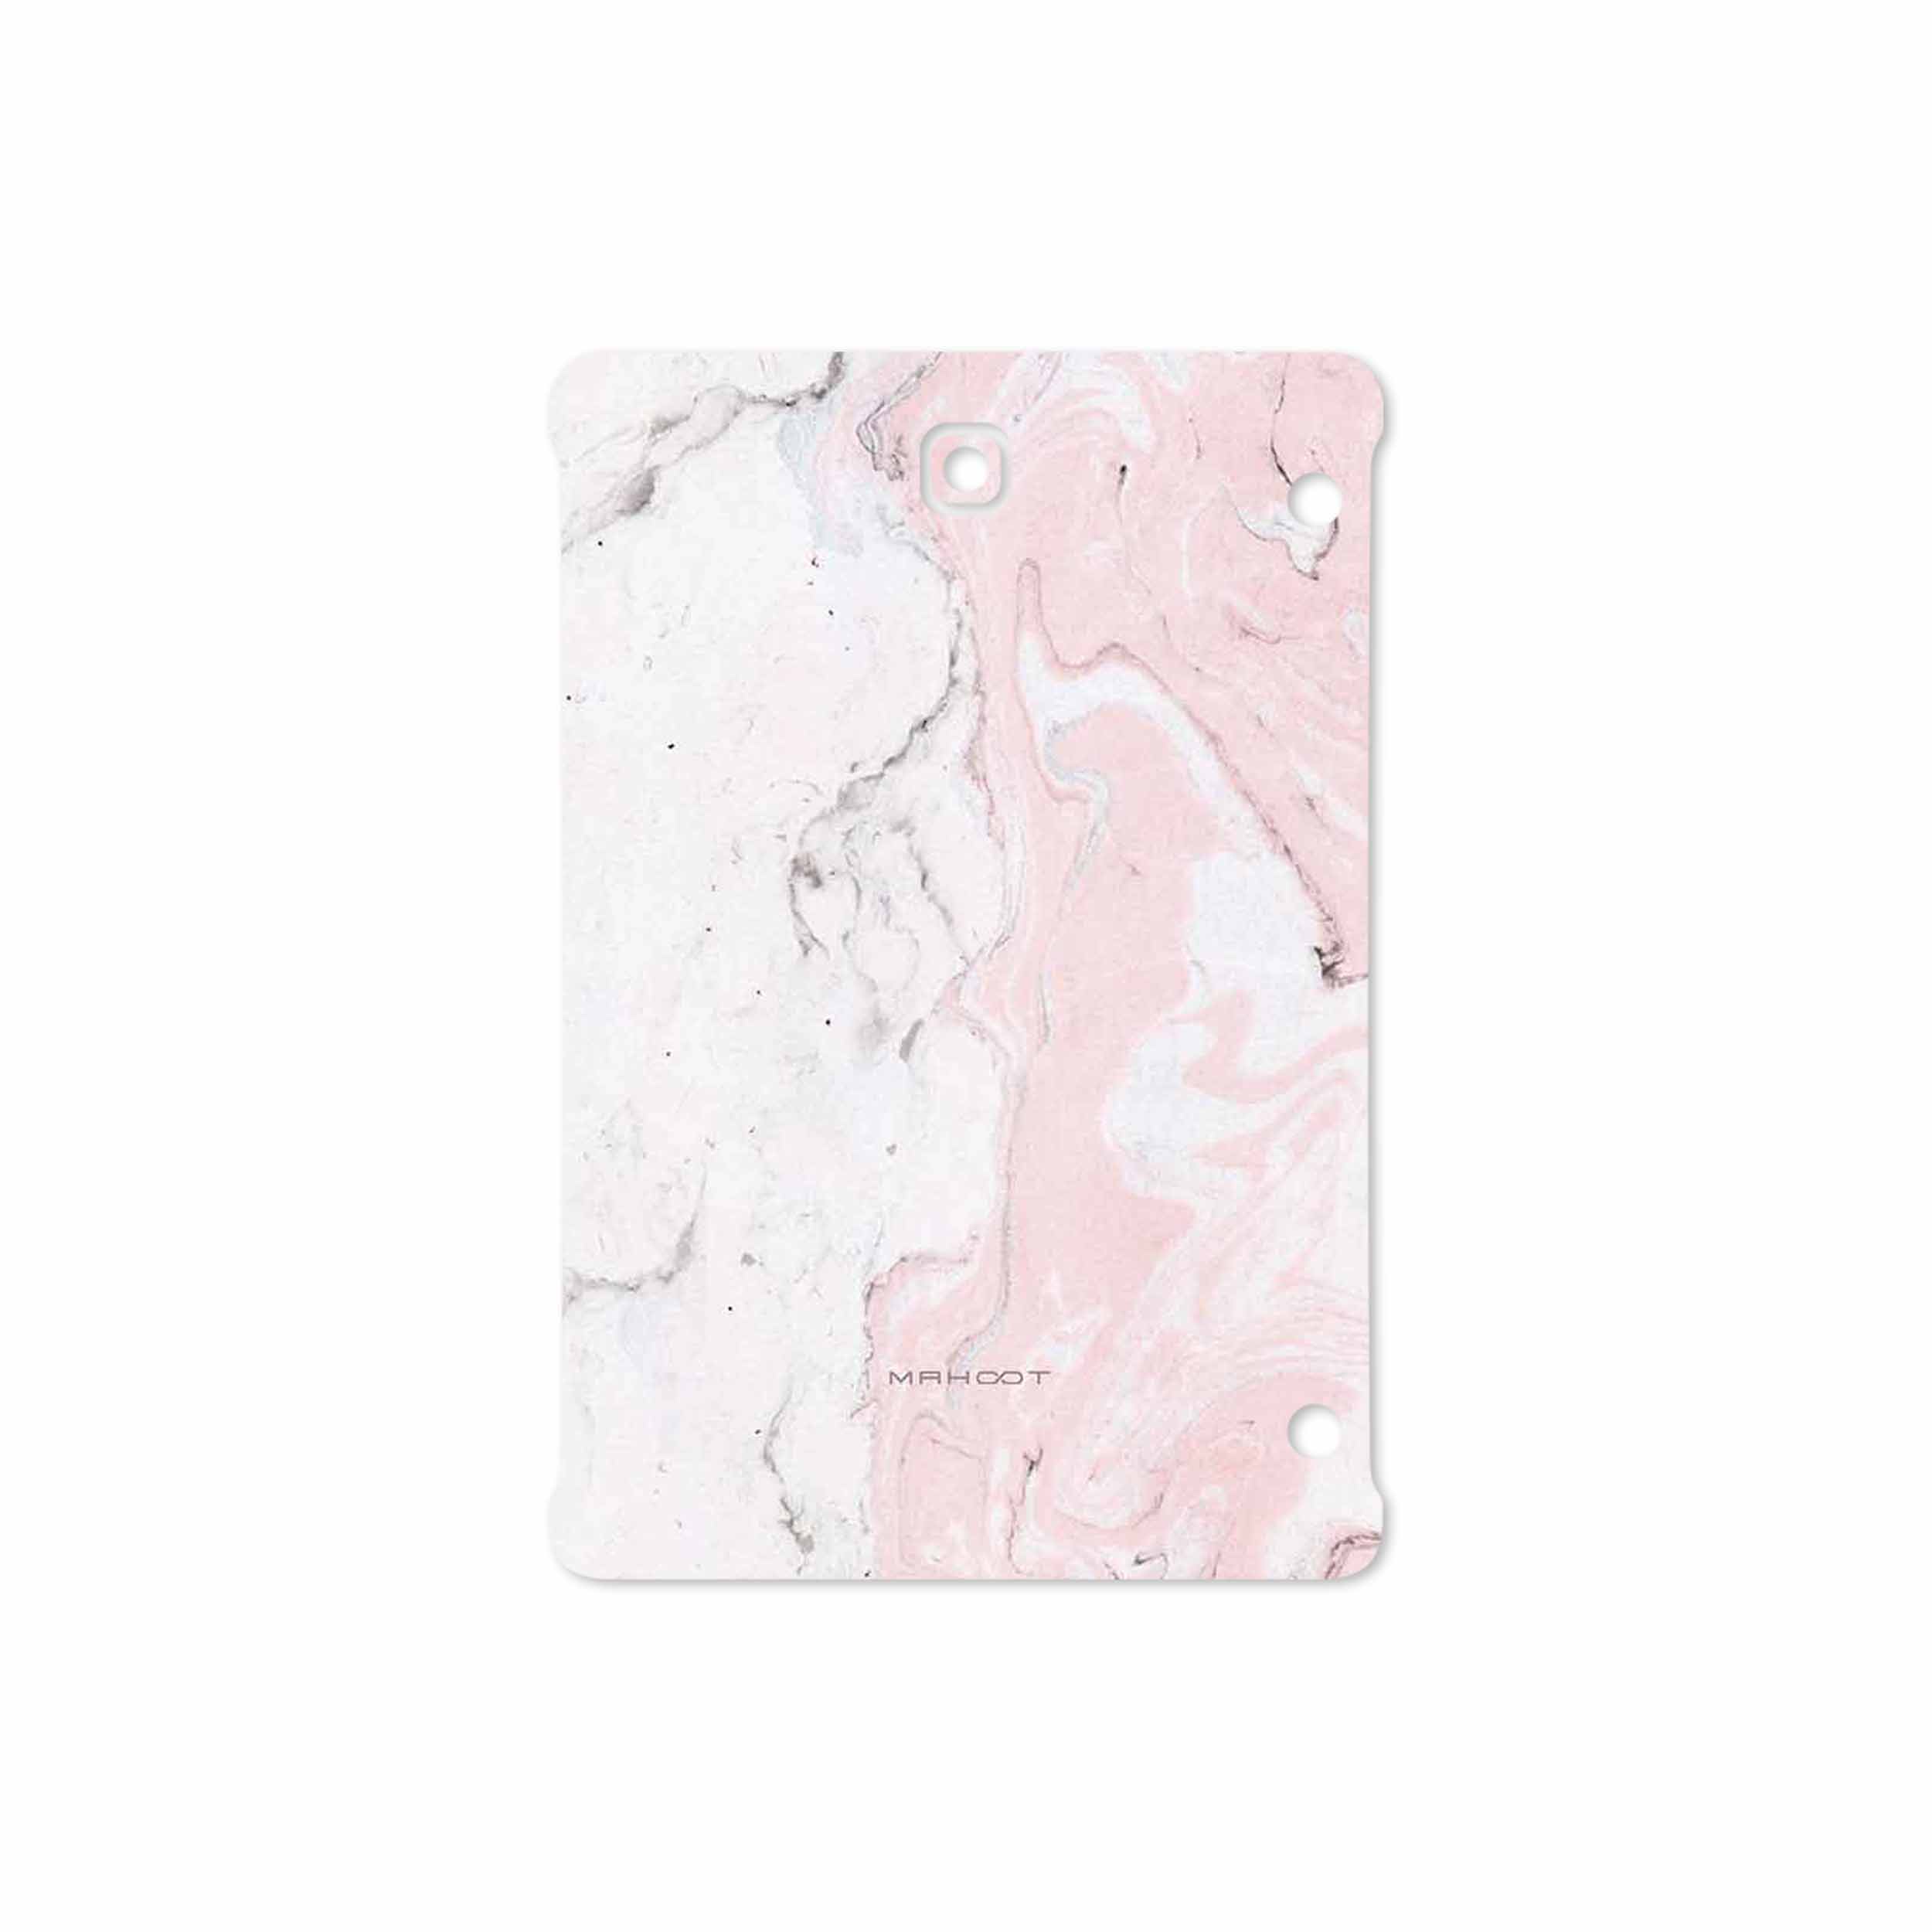 برچسب پوششی ماهوت مدل Blanco-Pink-Marble مناسب برای تبلت سامسونگ Galaxy Tab S2 8.0 2016 T719N